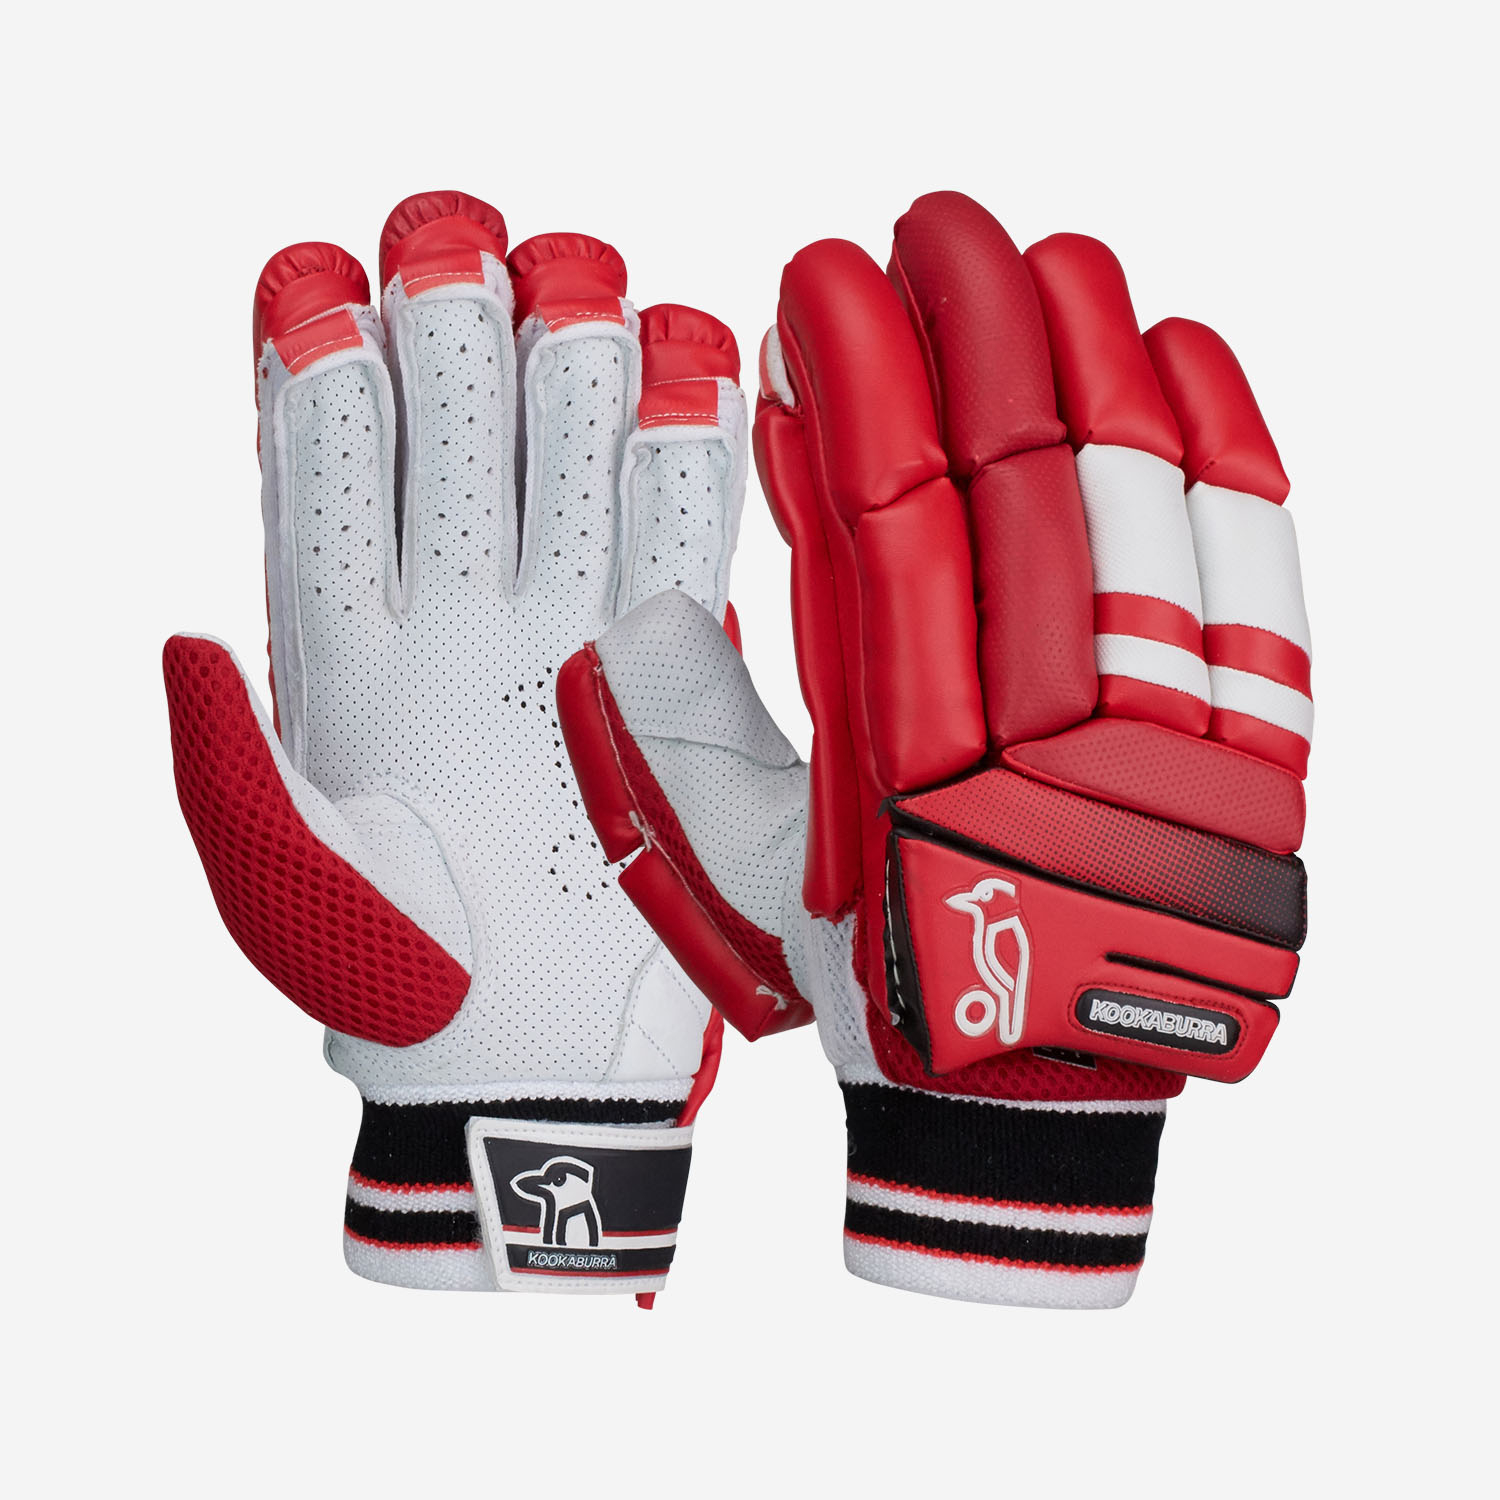 Kookaburra T20 Red Batting Gloves